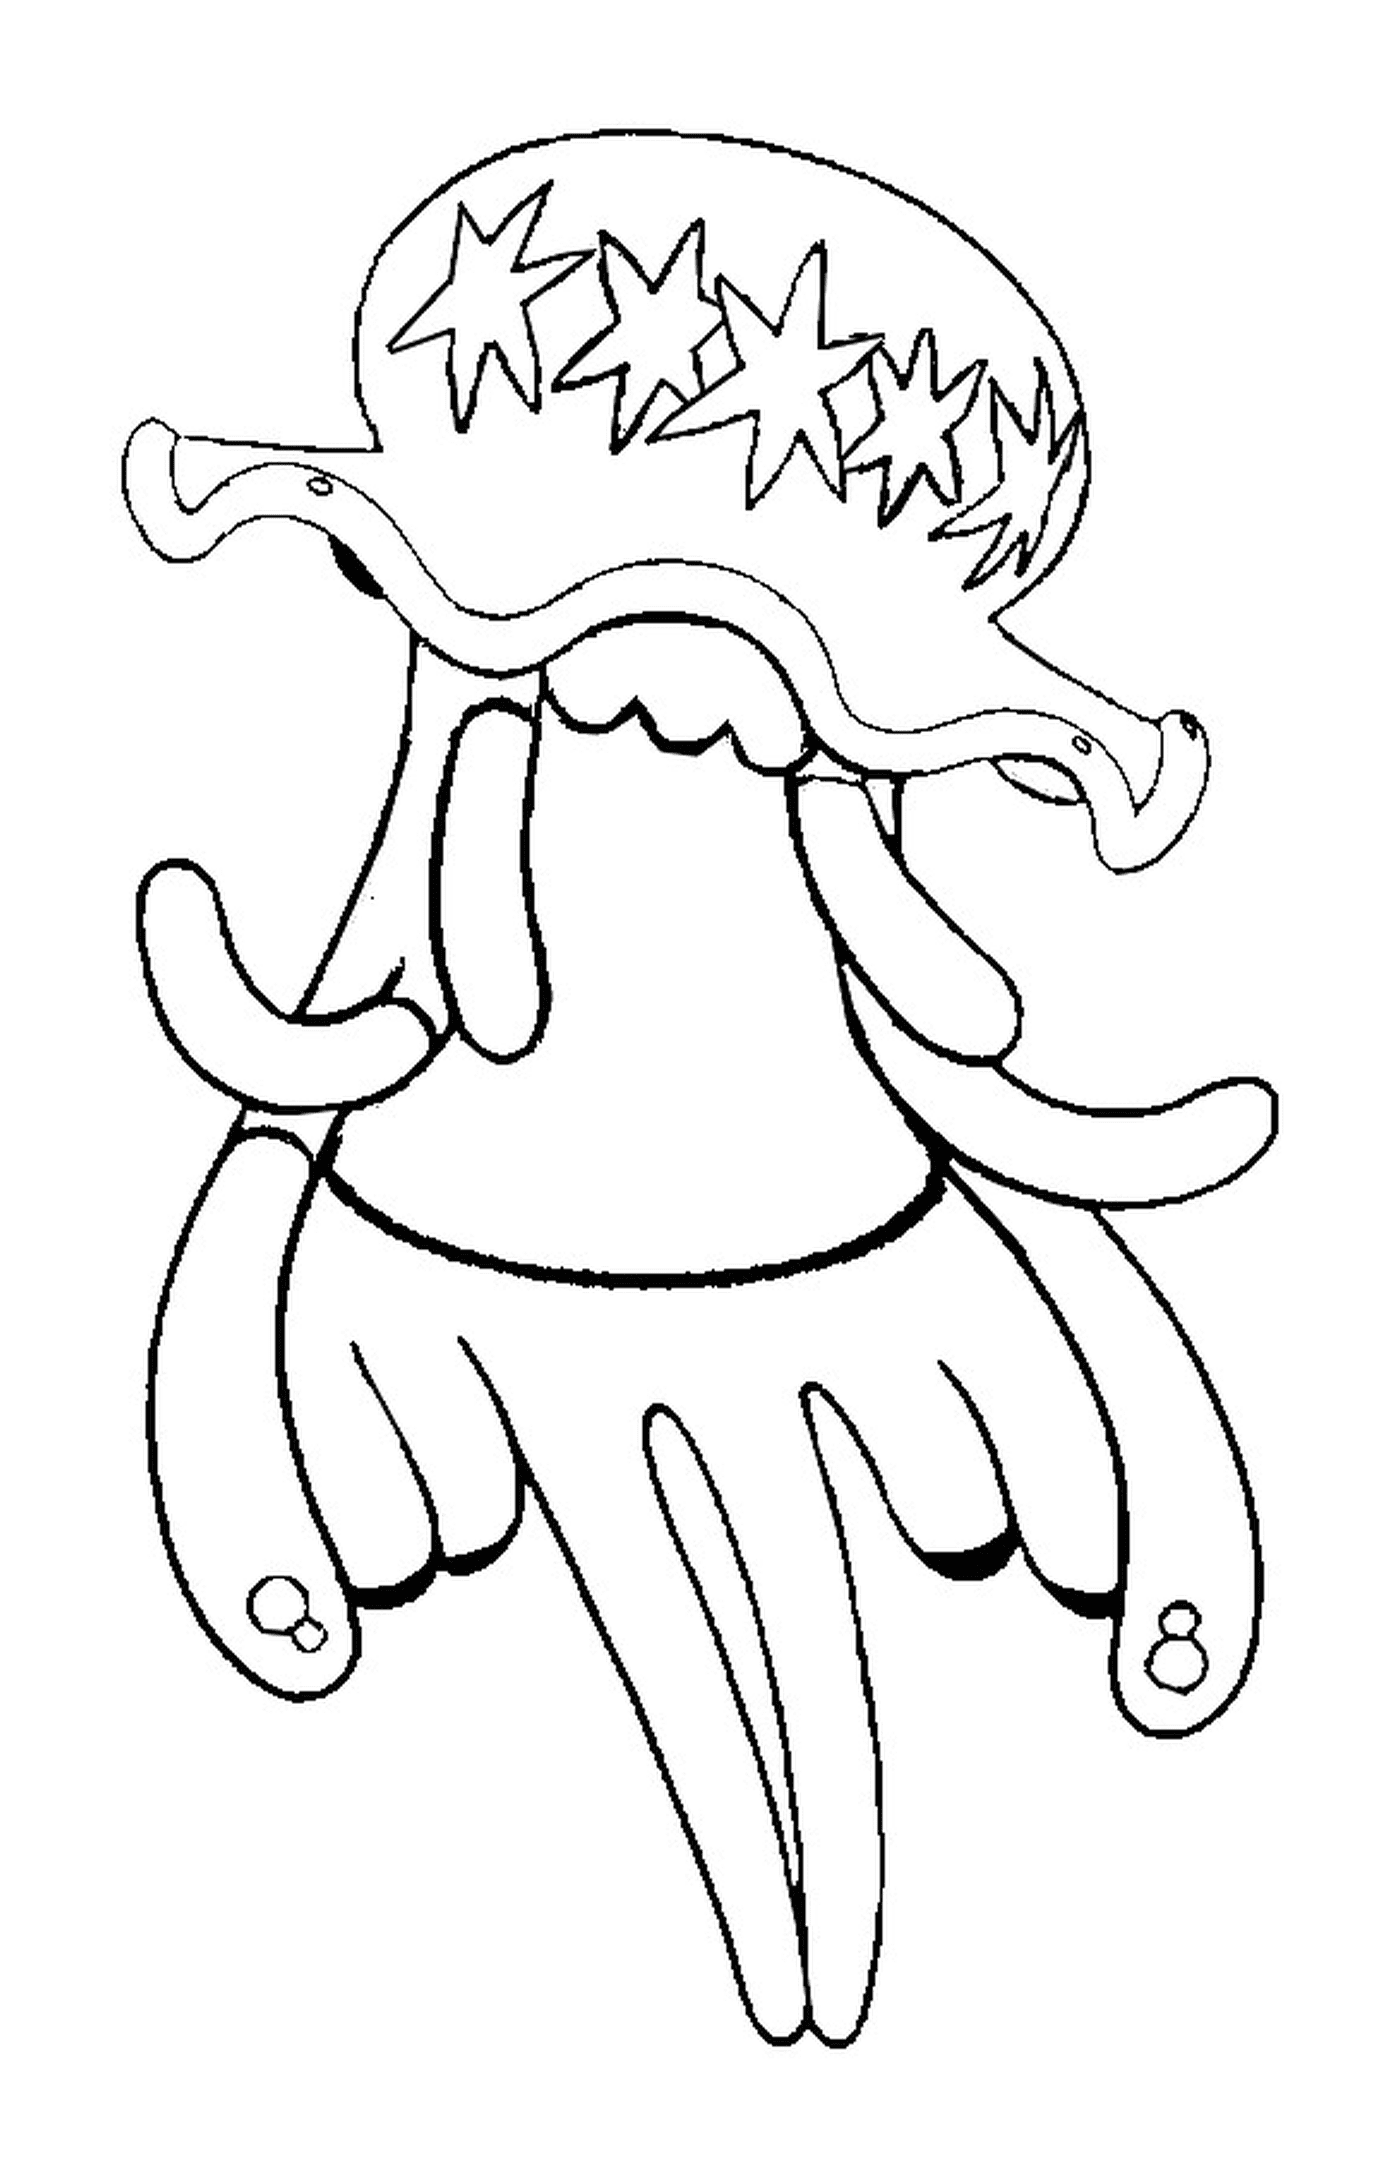  UB 01, длинный осьминог щупальца 